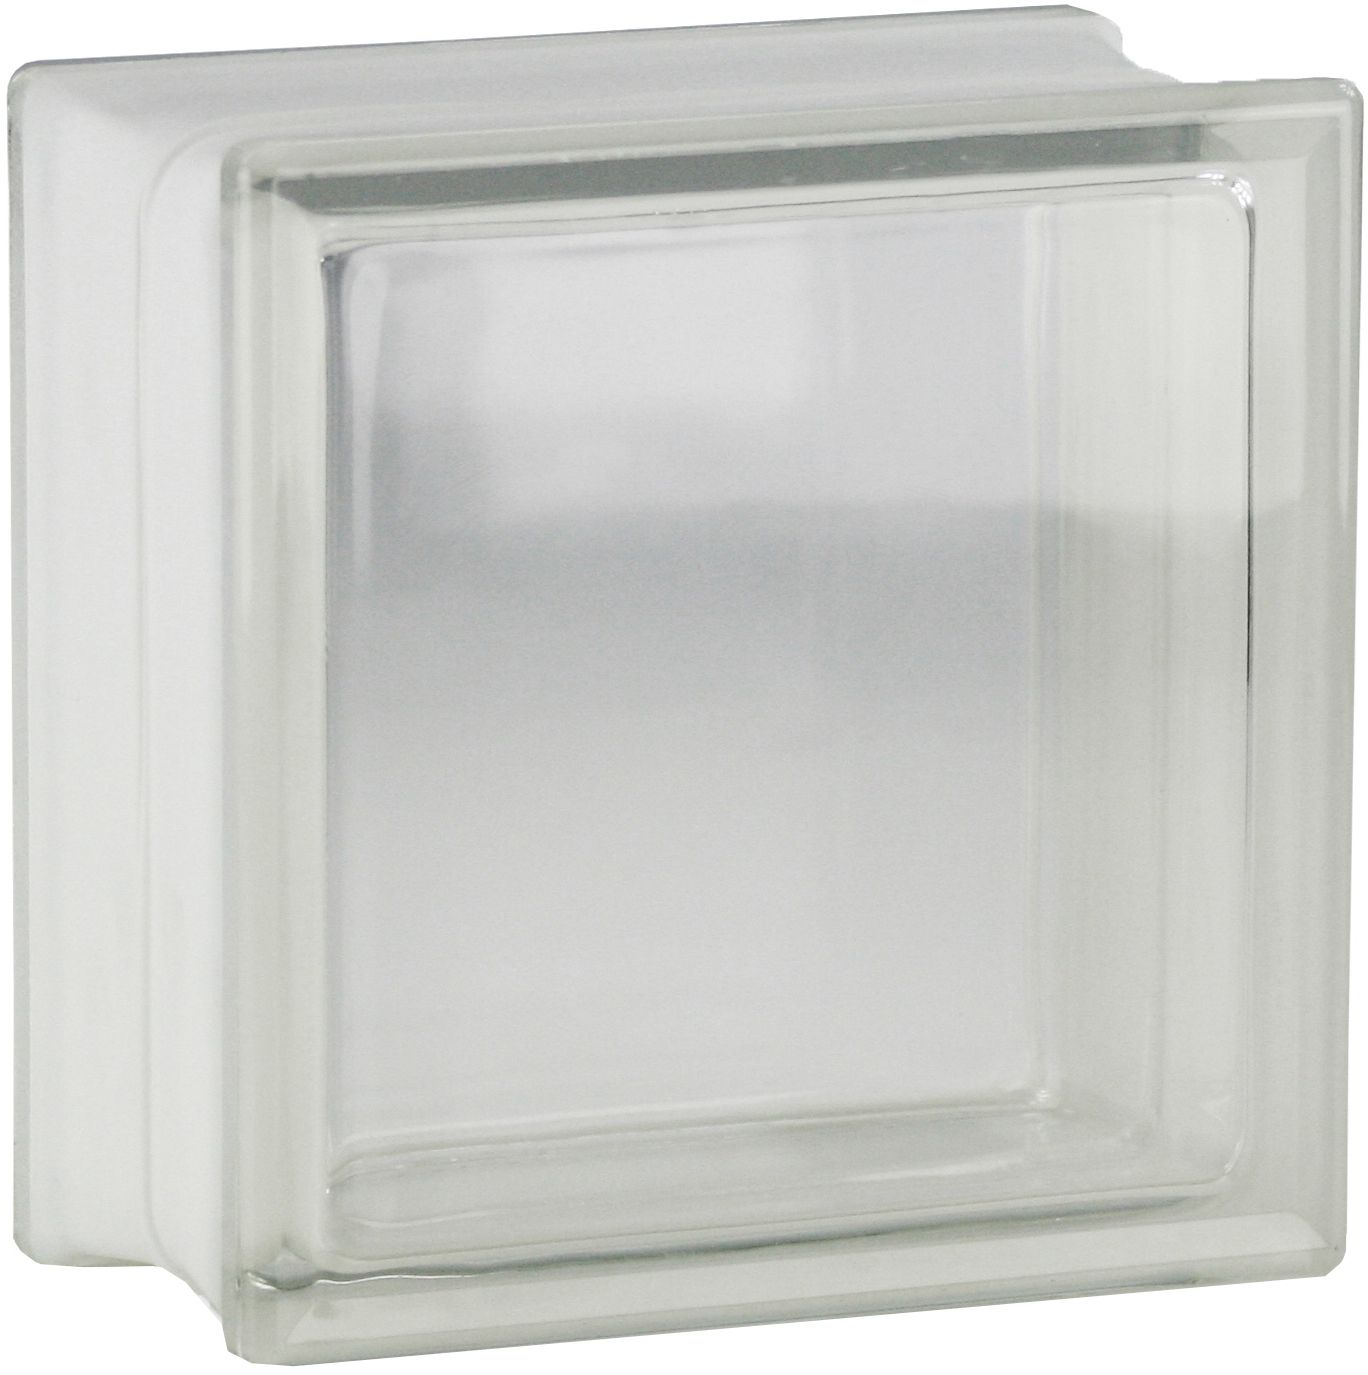 Design Glasbaustein Vollsicht weiß 1-seitig satiniert 19x19x10 cm